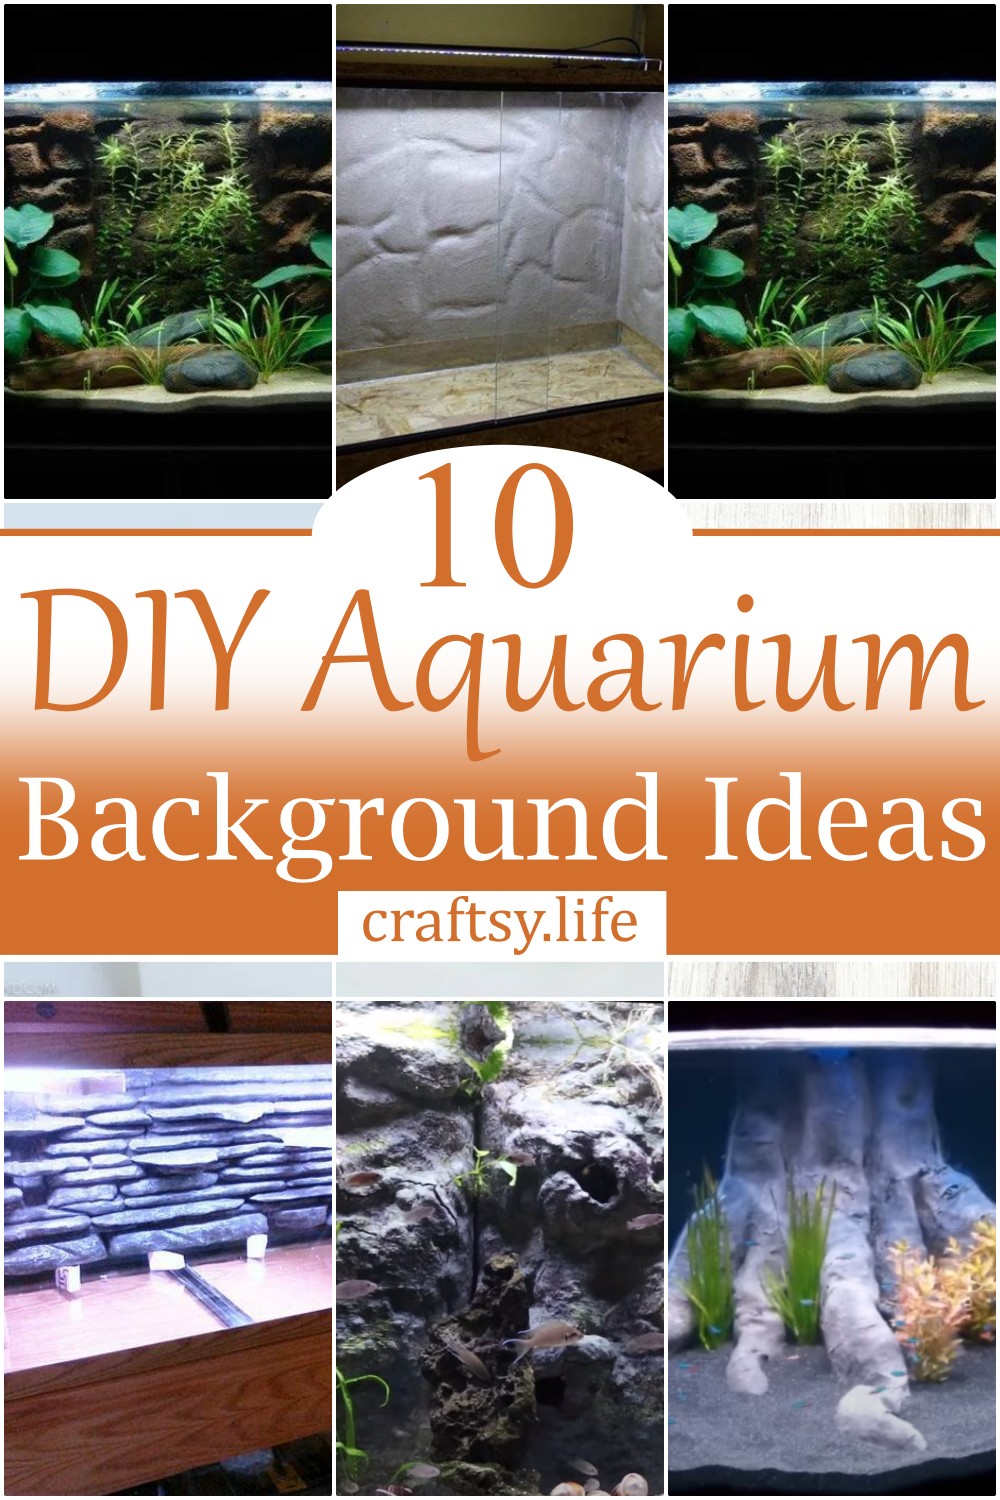 DIY Aquarium Background Ideas